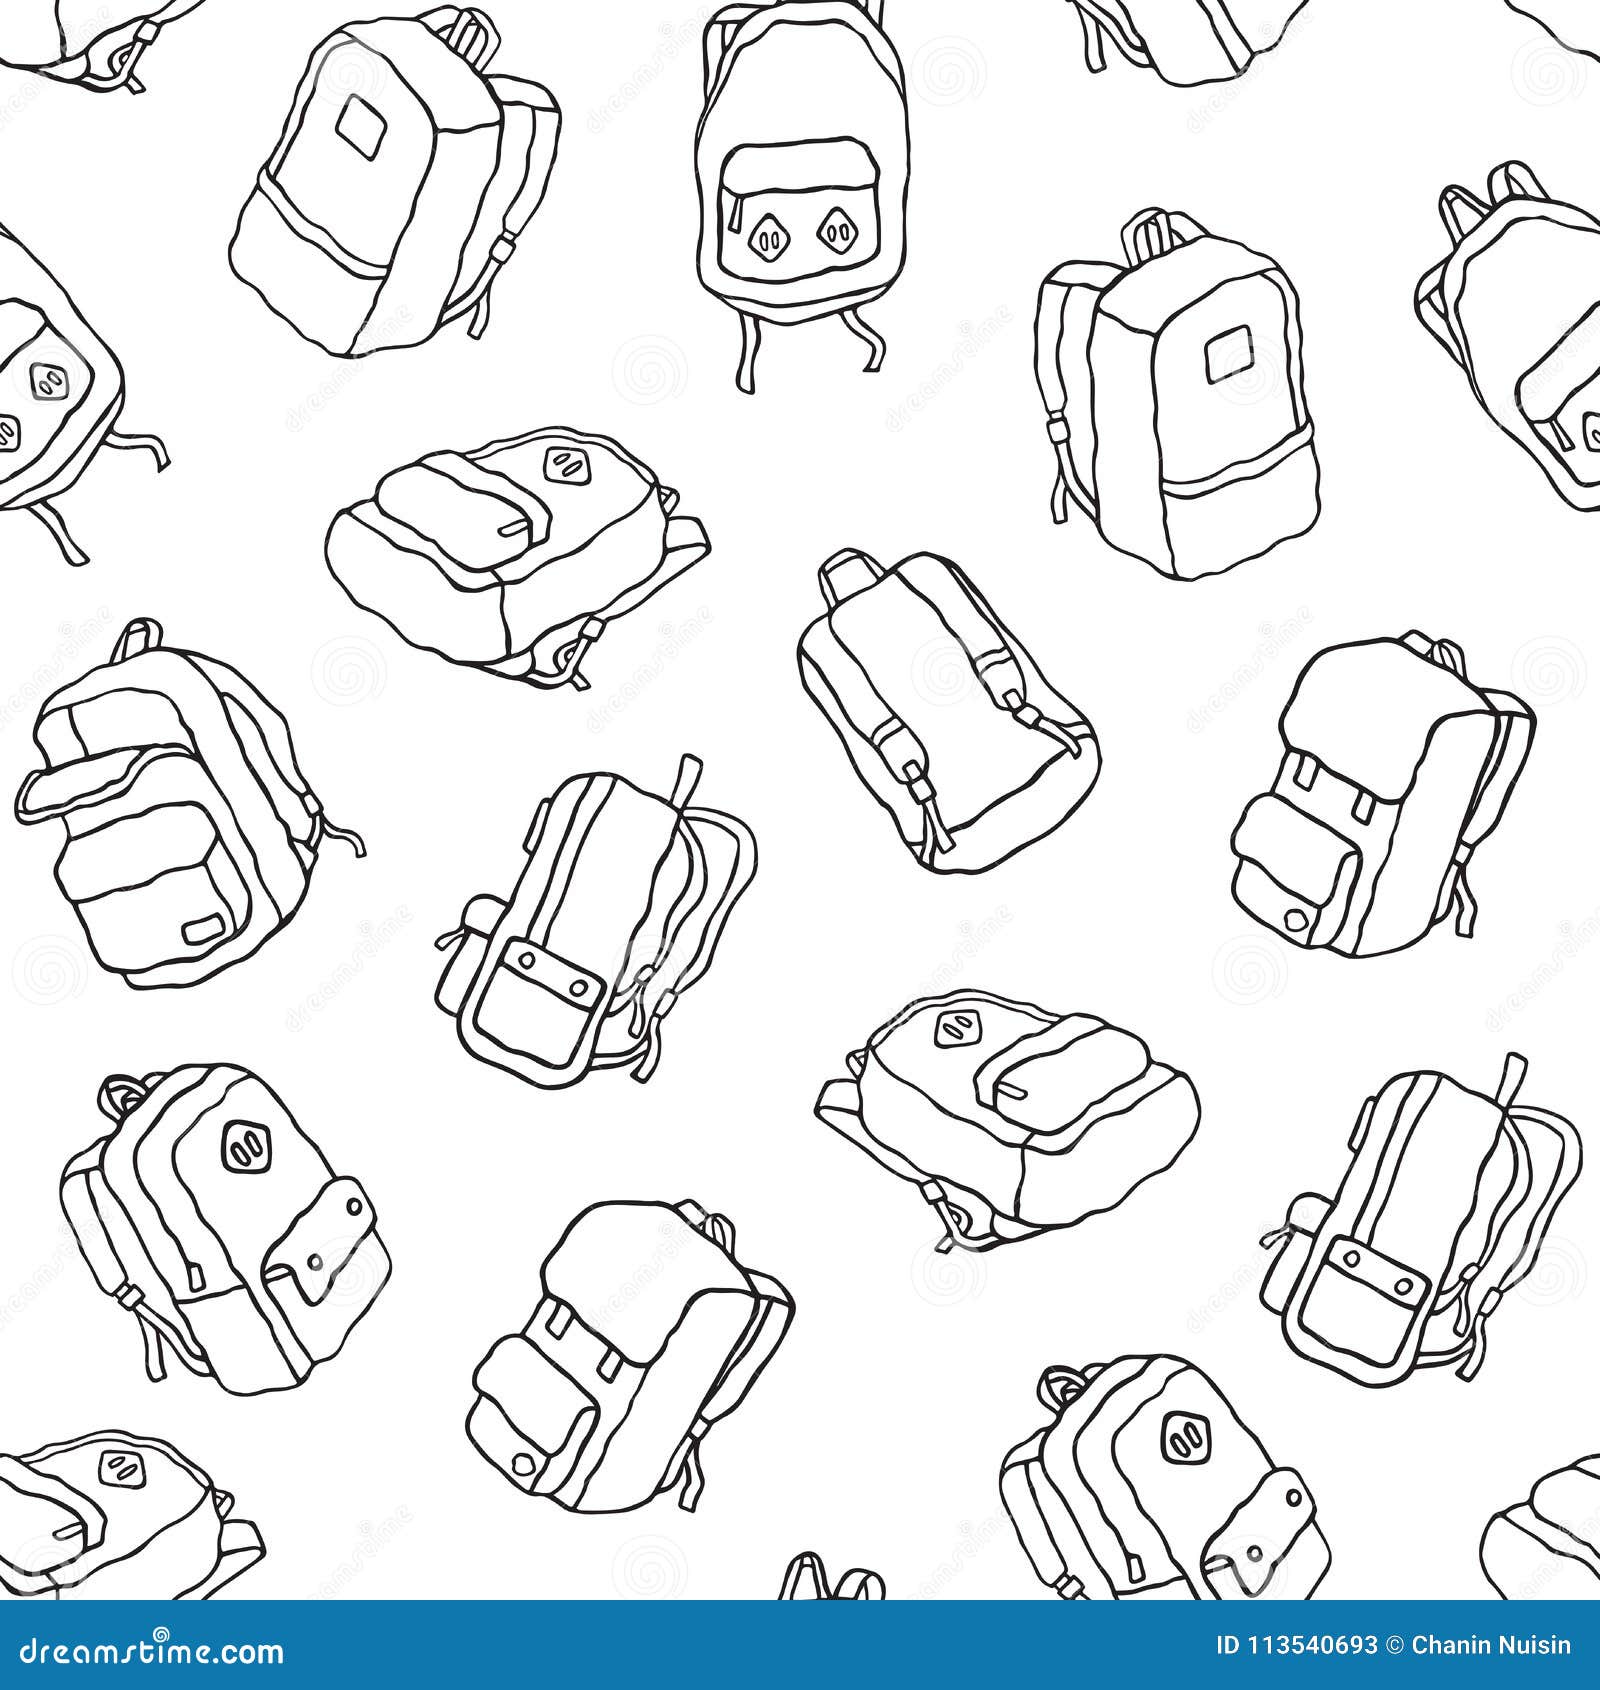 Backpack Doodle Vector Illustration Of School Bag Back To School